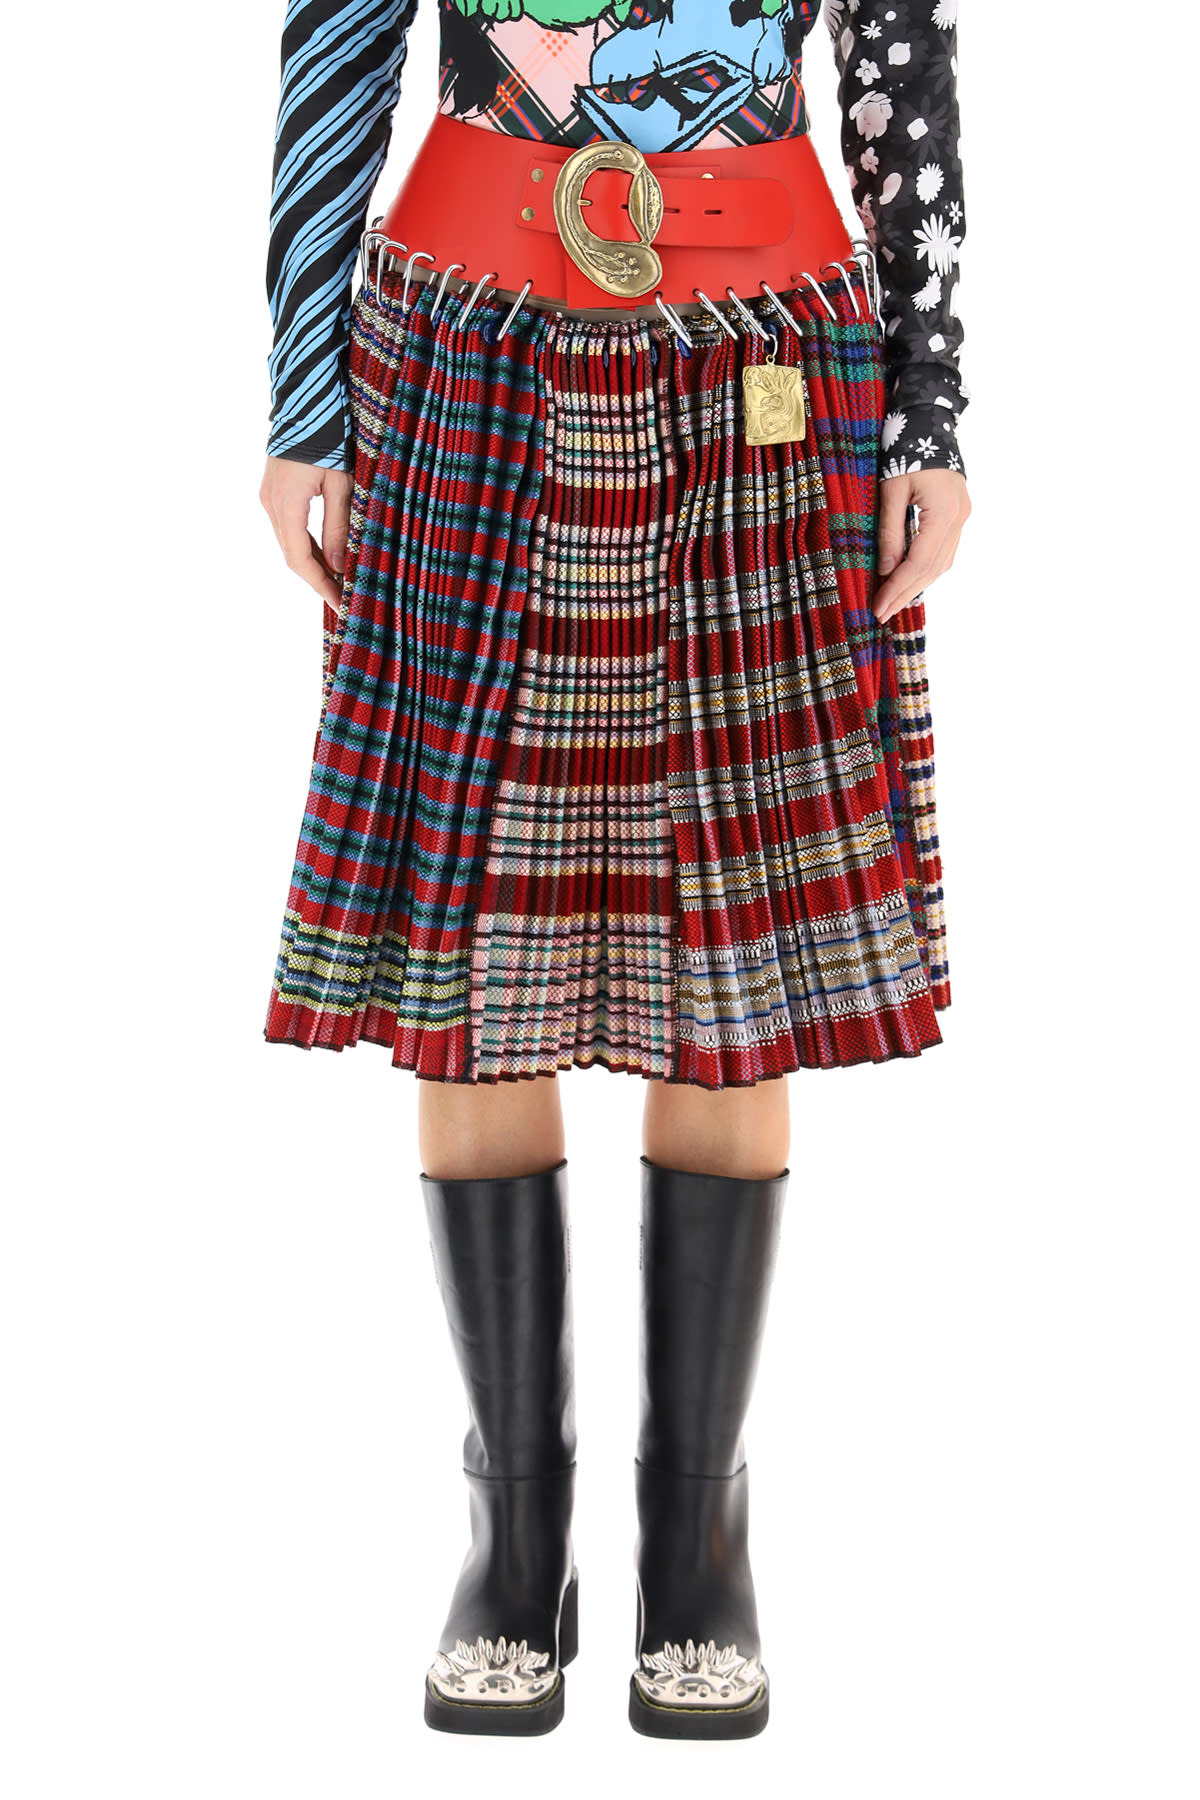 Chopova Lowena Tartan Wool Midi Skirt